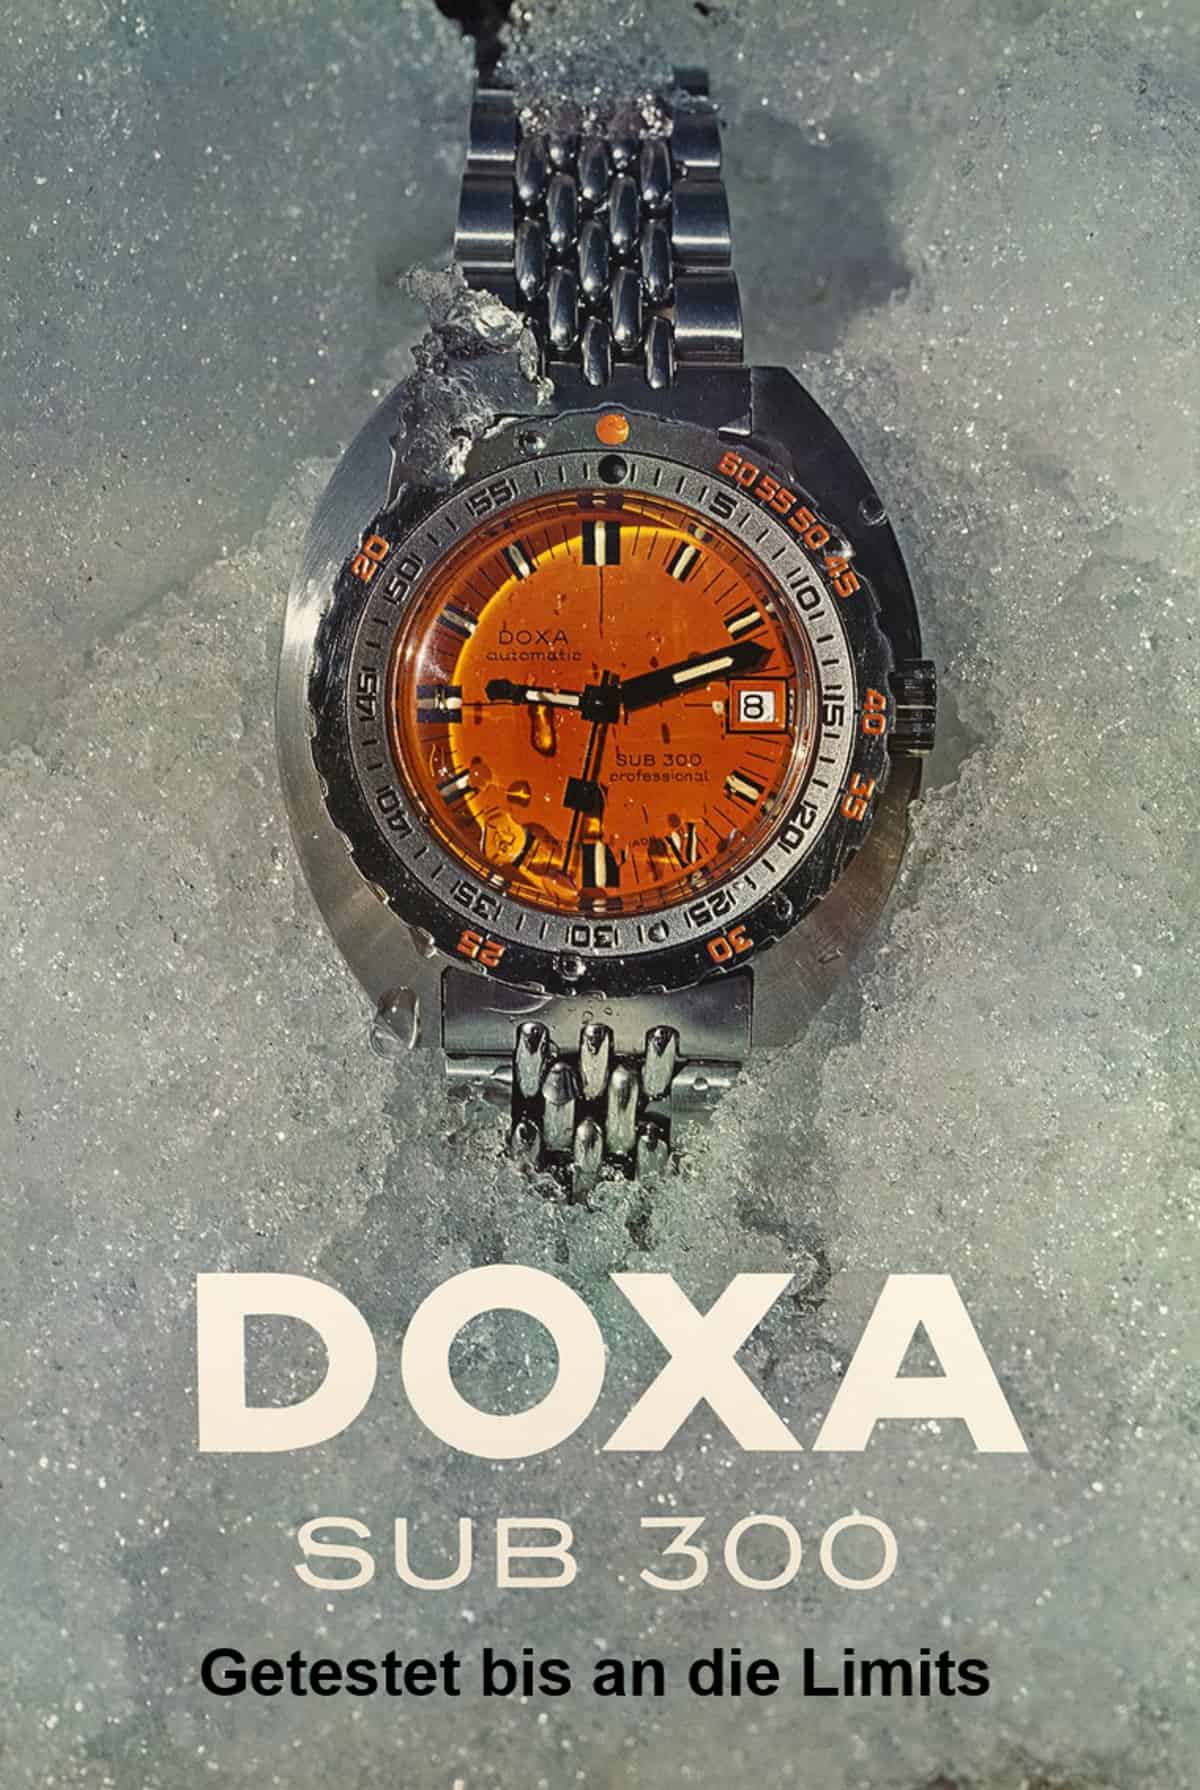 Anzeige für eine Doxa Sub 300 Orange Taucheruhr